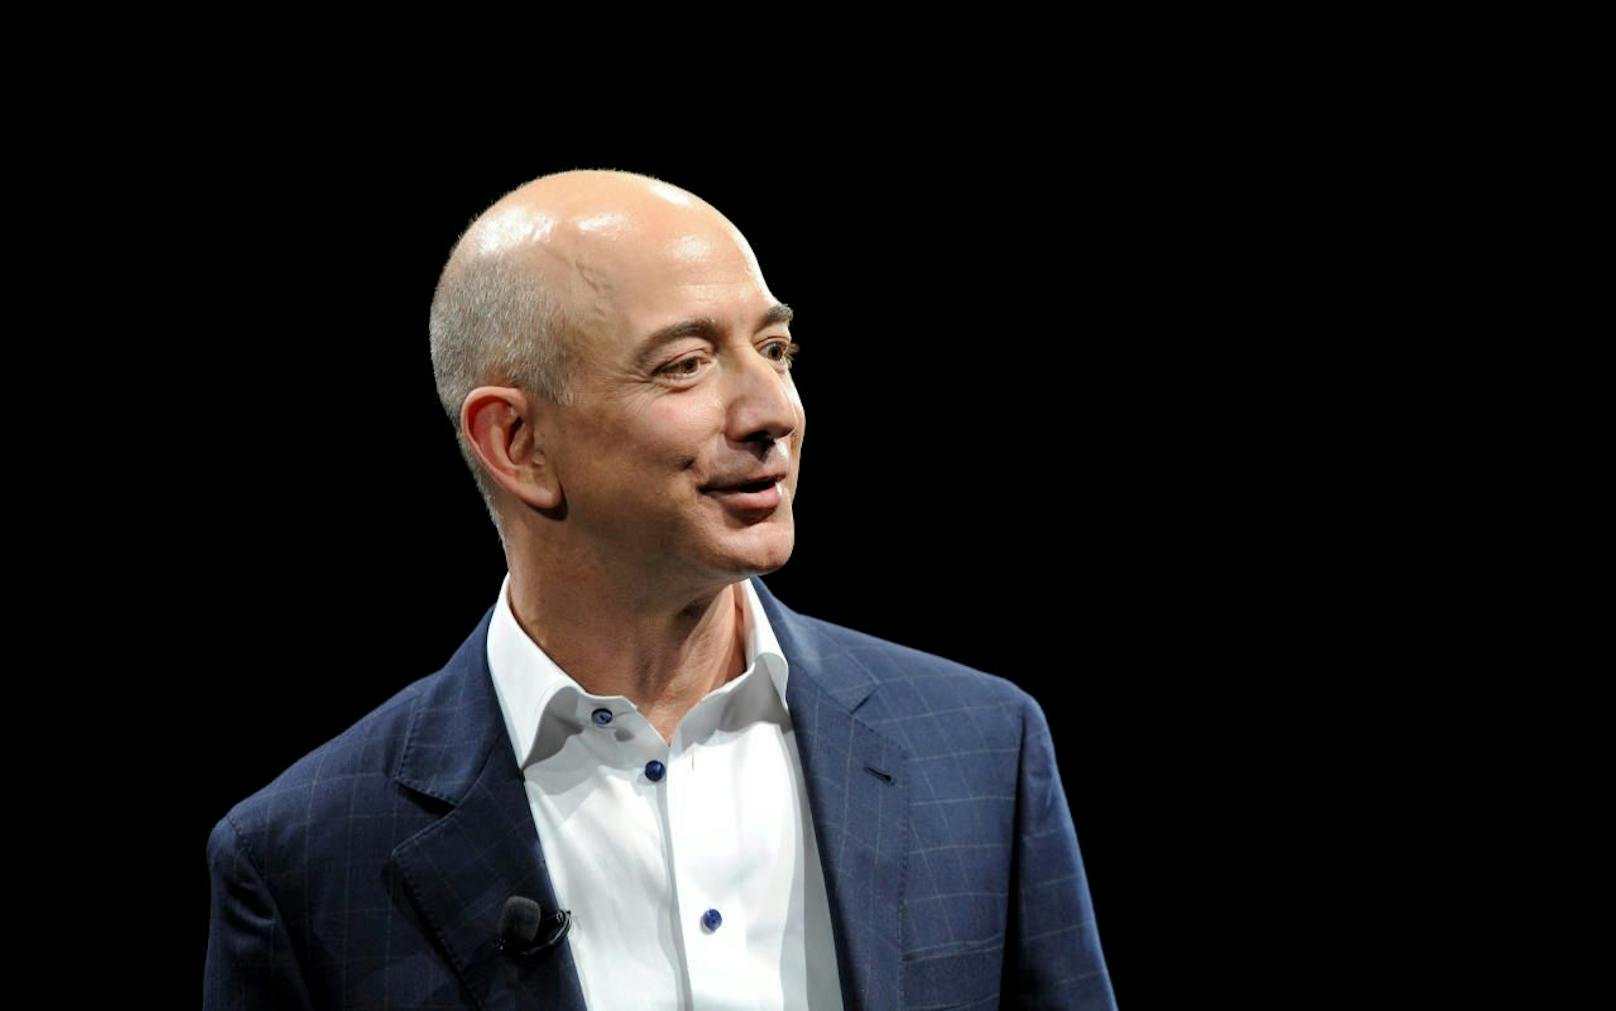 Die Attribute polarisierend und erfolgreich scheinen gut zusammen zu passen: Amazon-Gründer Jeff Bezos